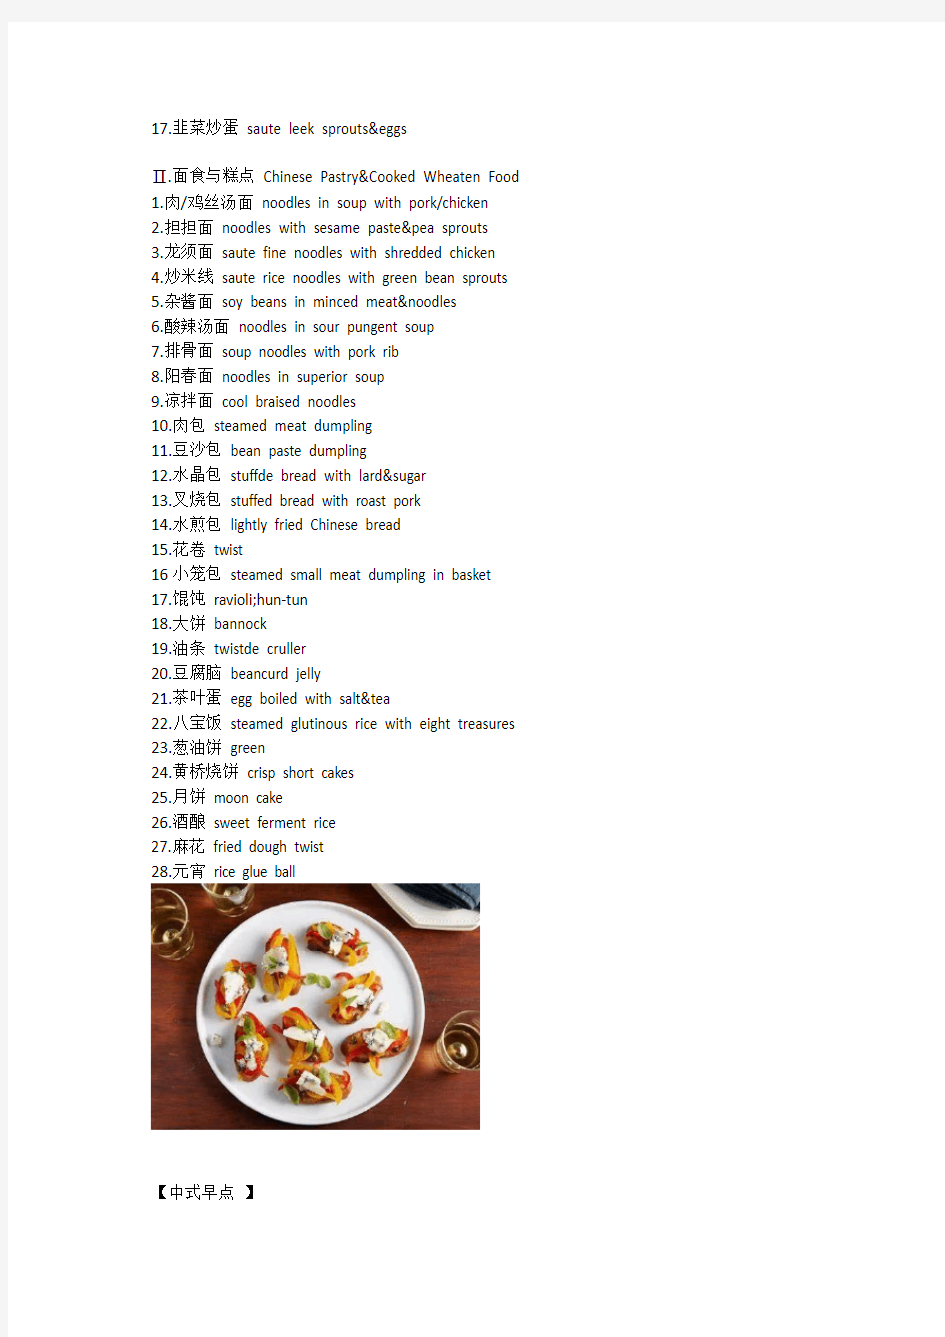 几乎所有中国菜的英文翻译, 爱吃的吃货必备